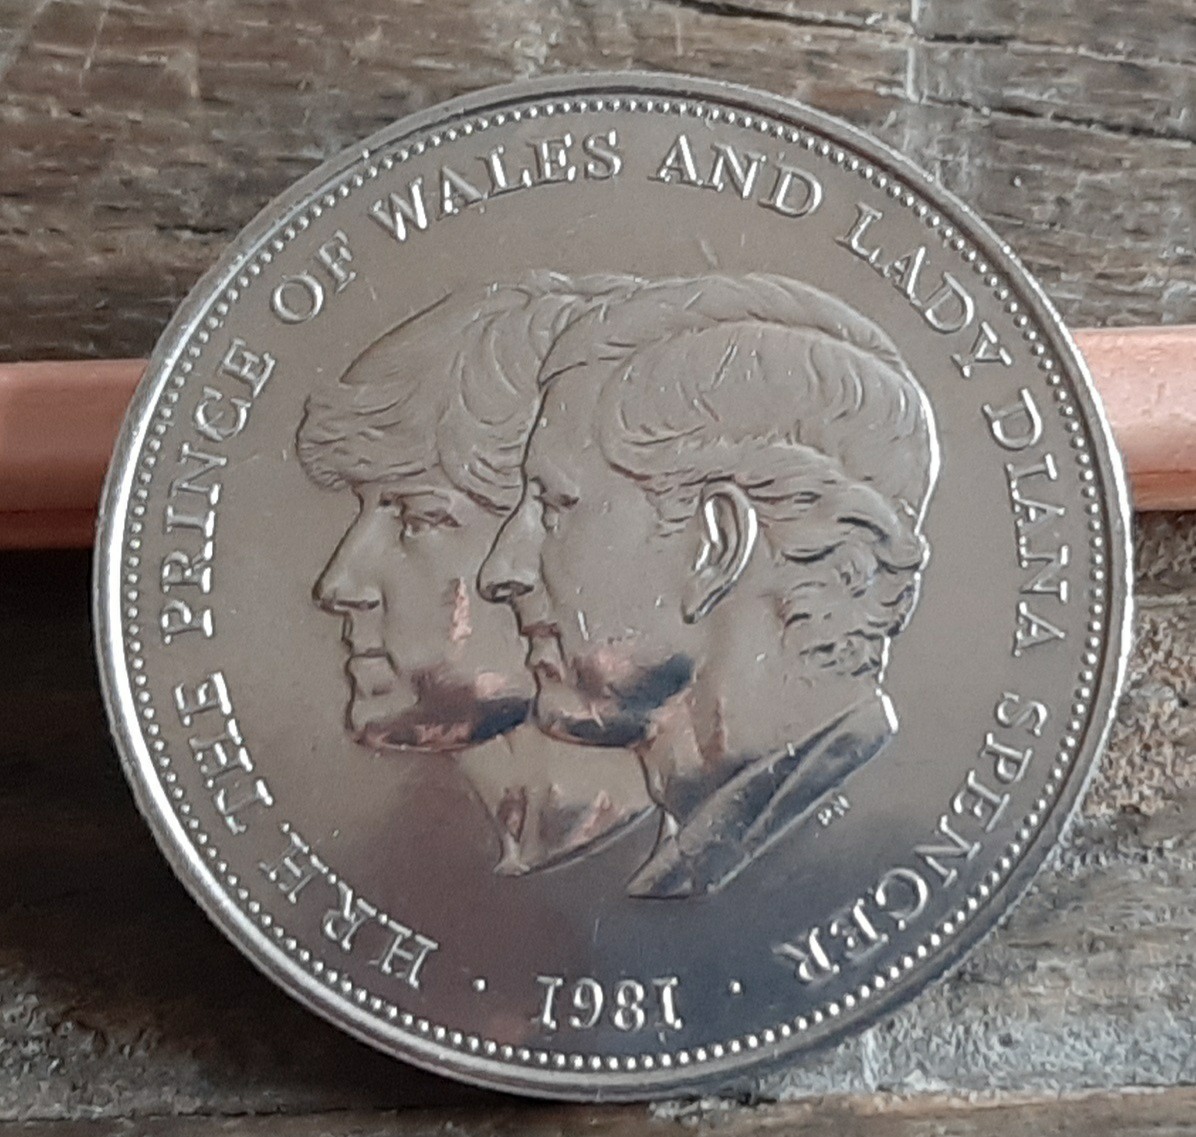 英国 イギリス 1981年 ブリティッシュ クラウン コイン 5シリング カプセル付き28g 39mm 美品です 本物 Charles & Diana の画像1